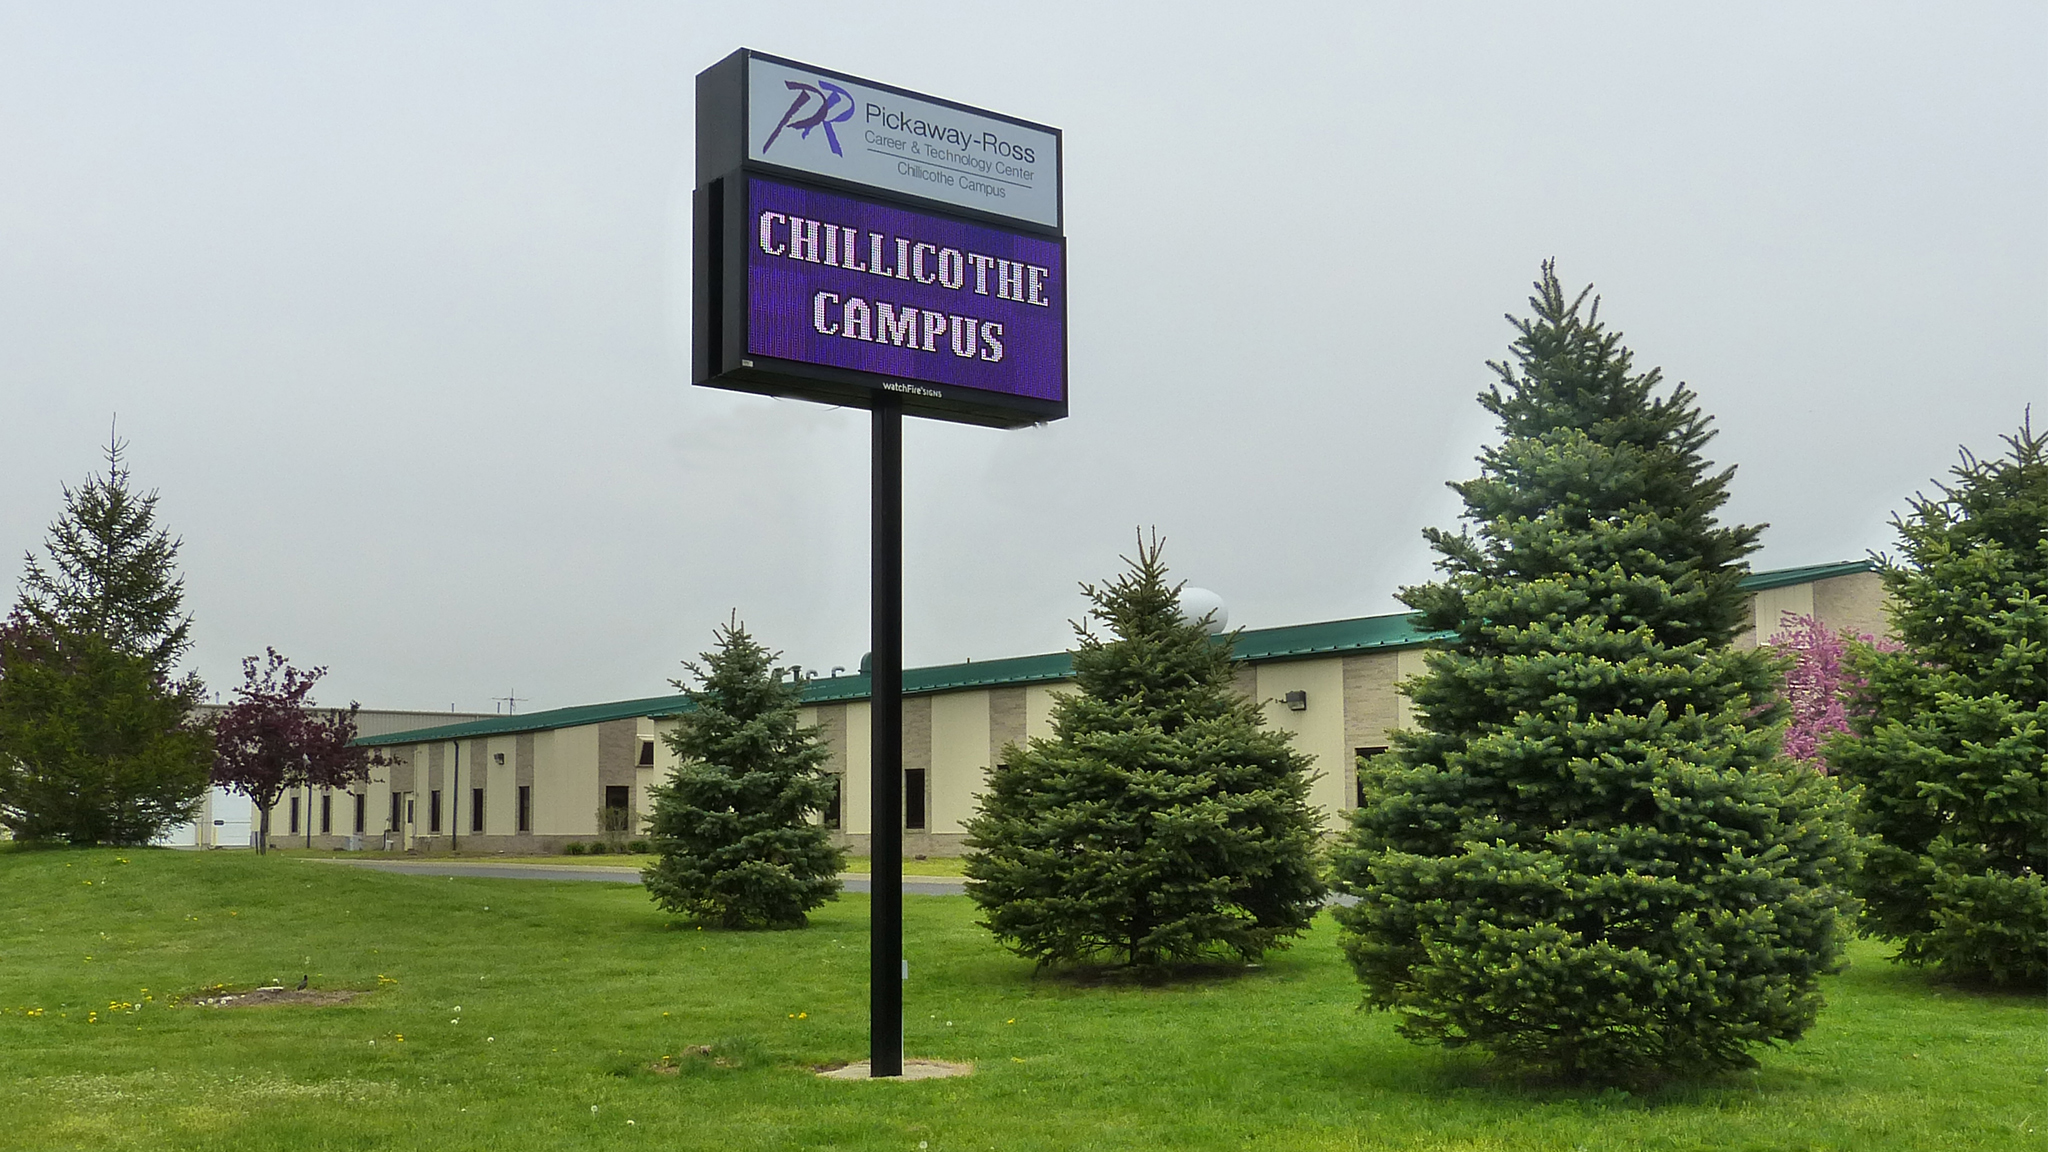 Chillicothe Campus